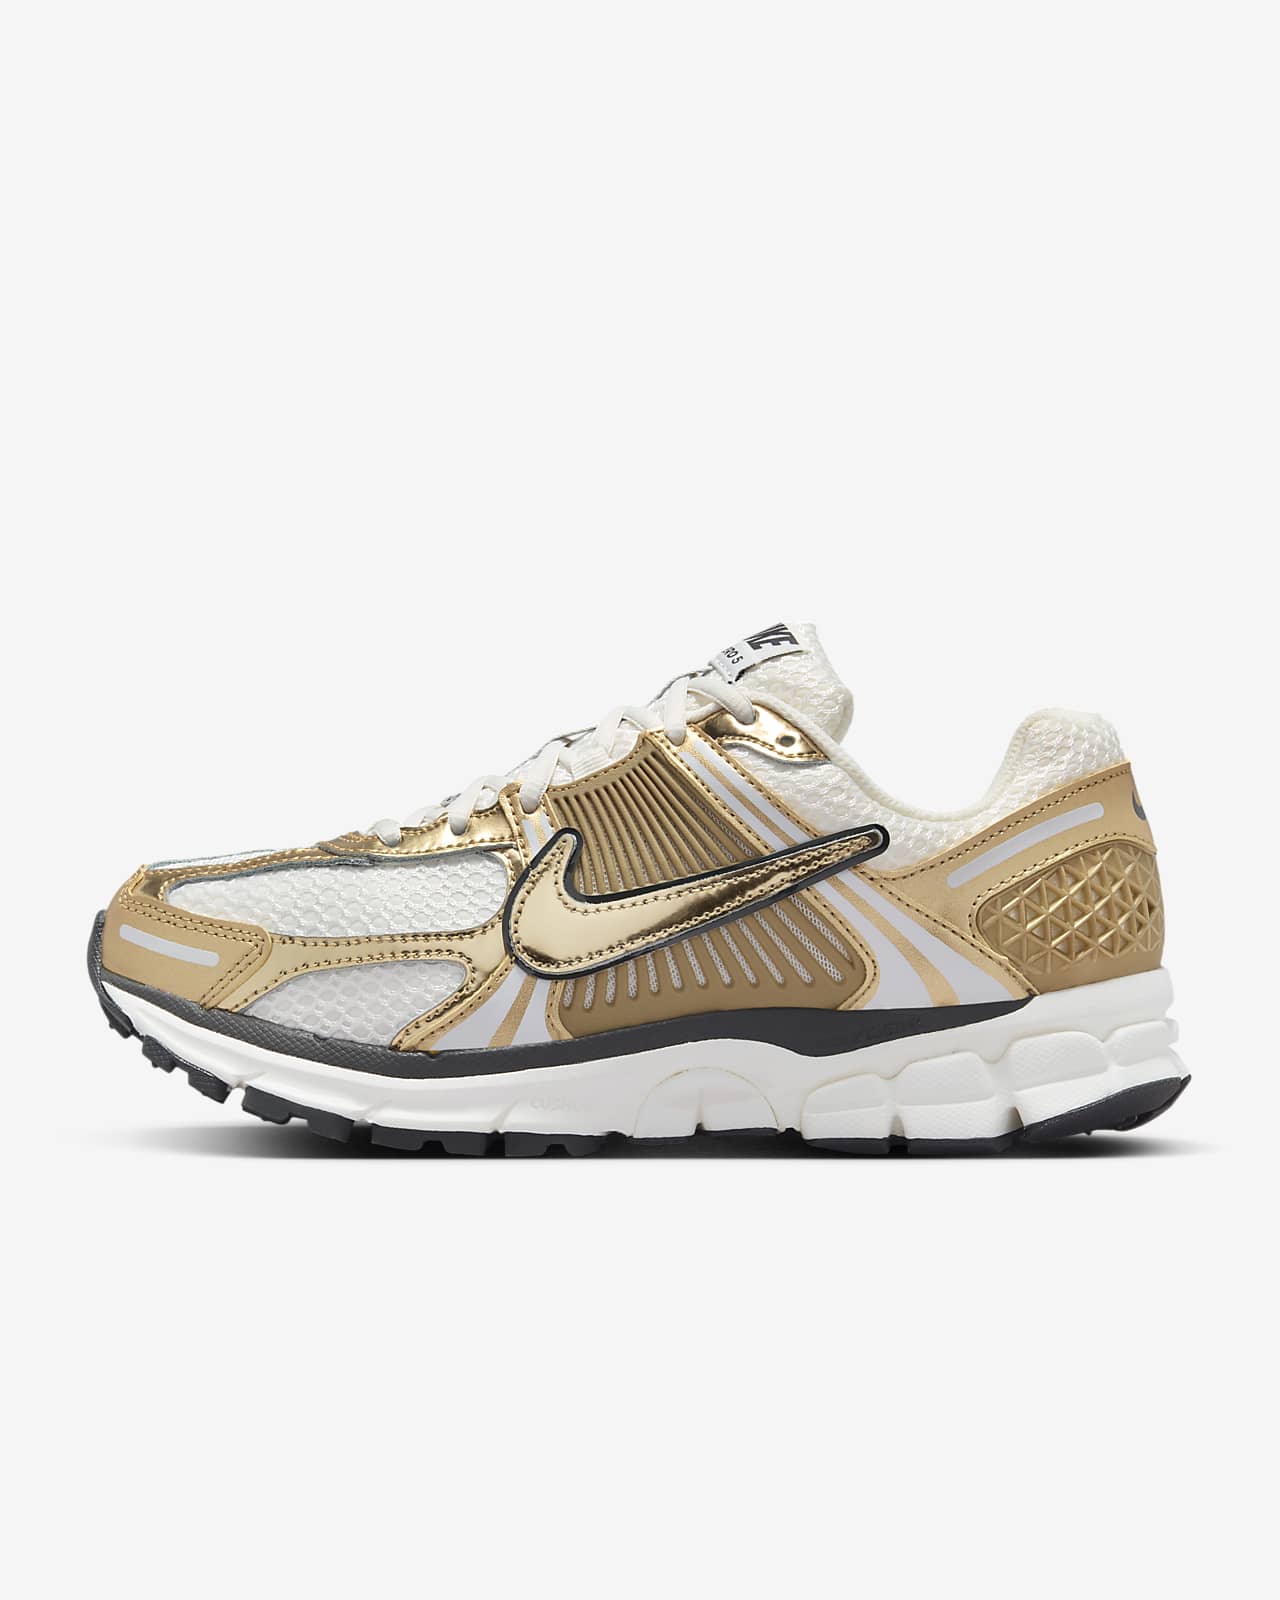 Nike Zoom Vomero 5 Gold-sko til kvinder